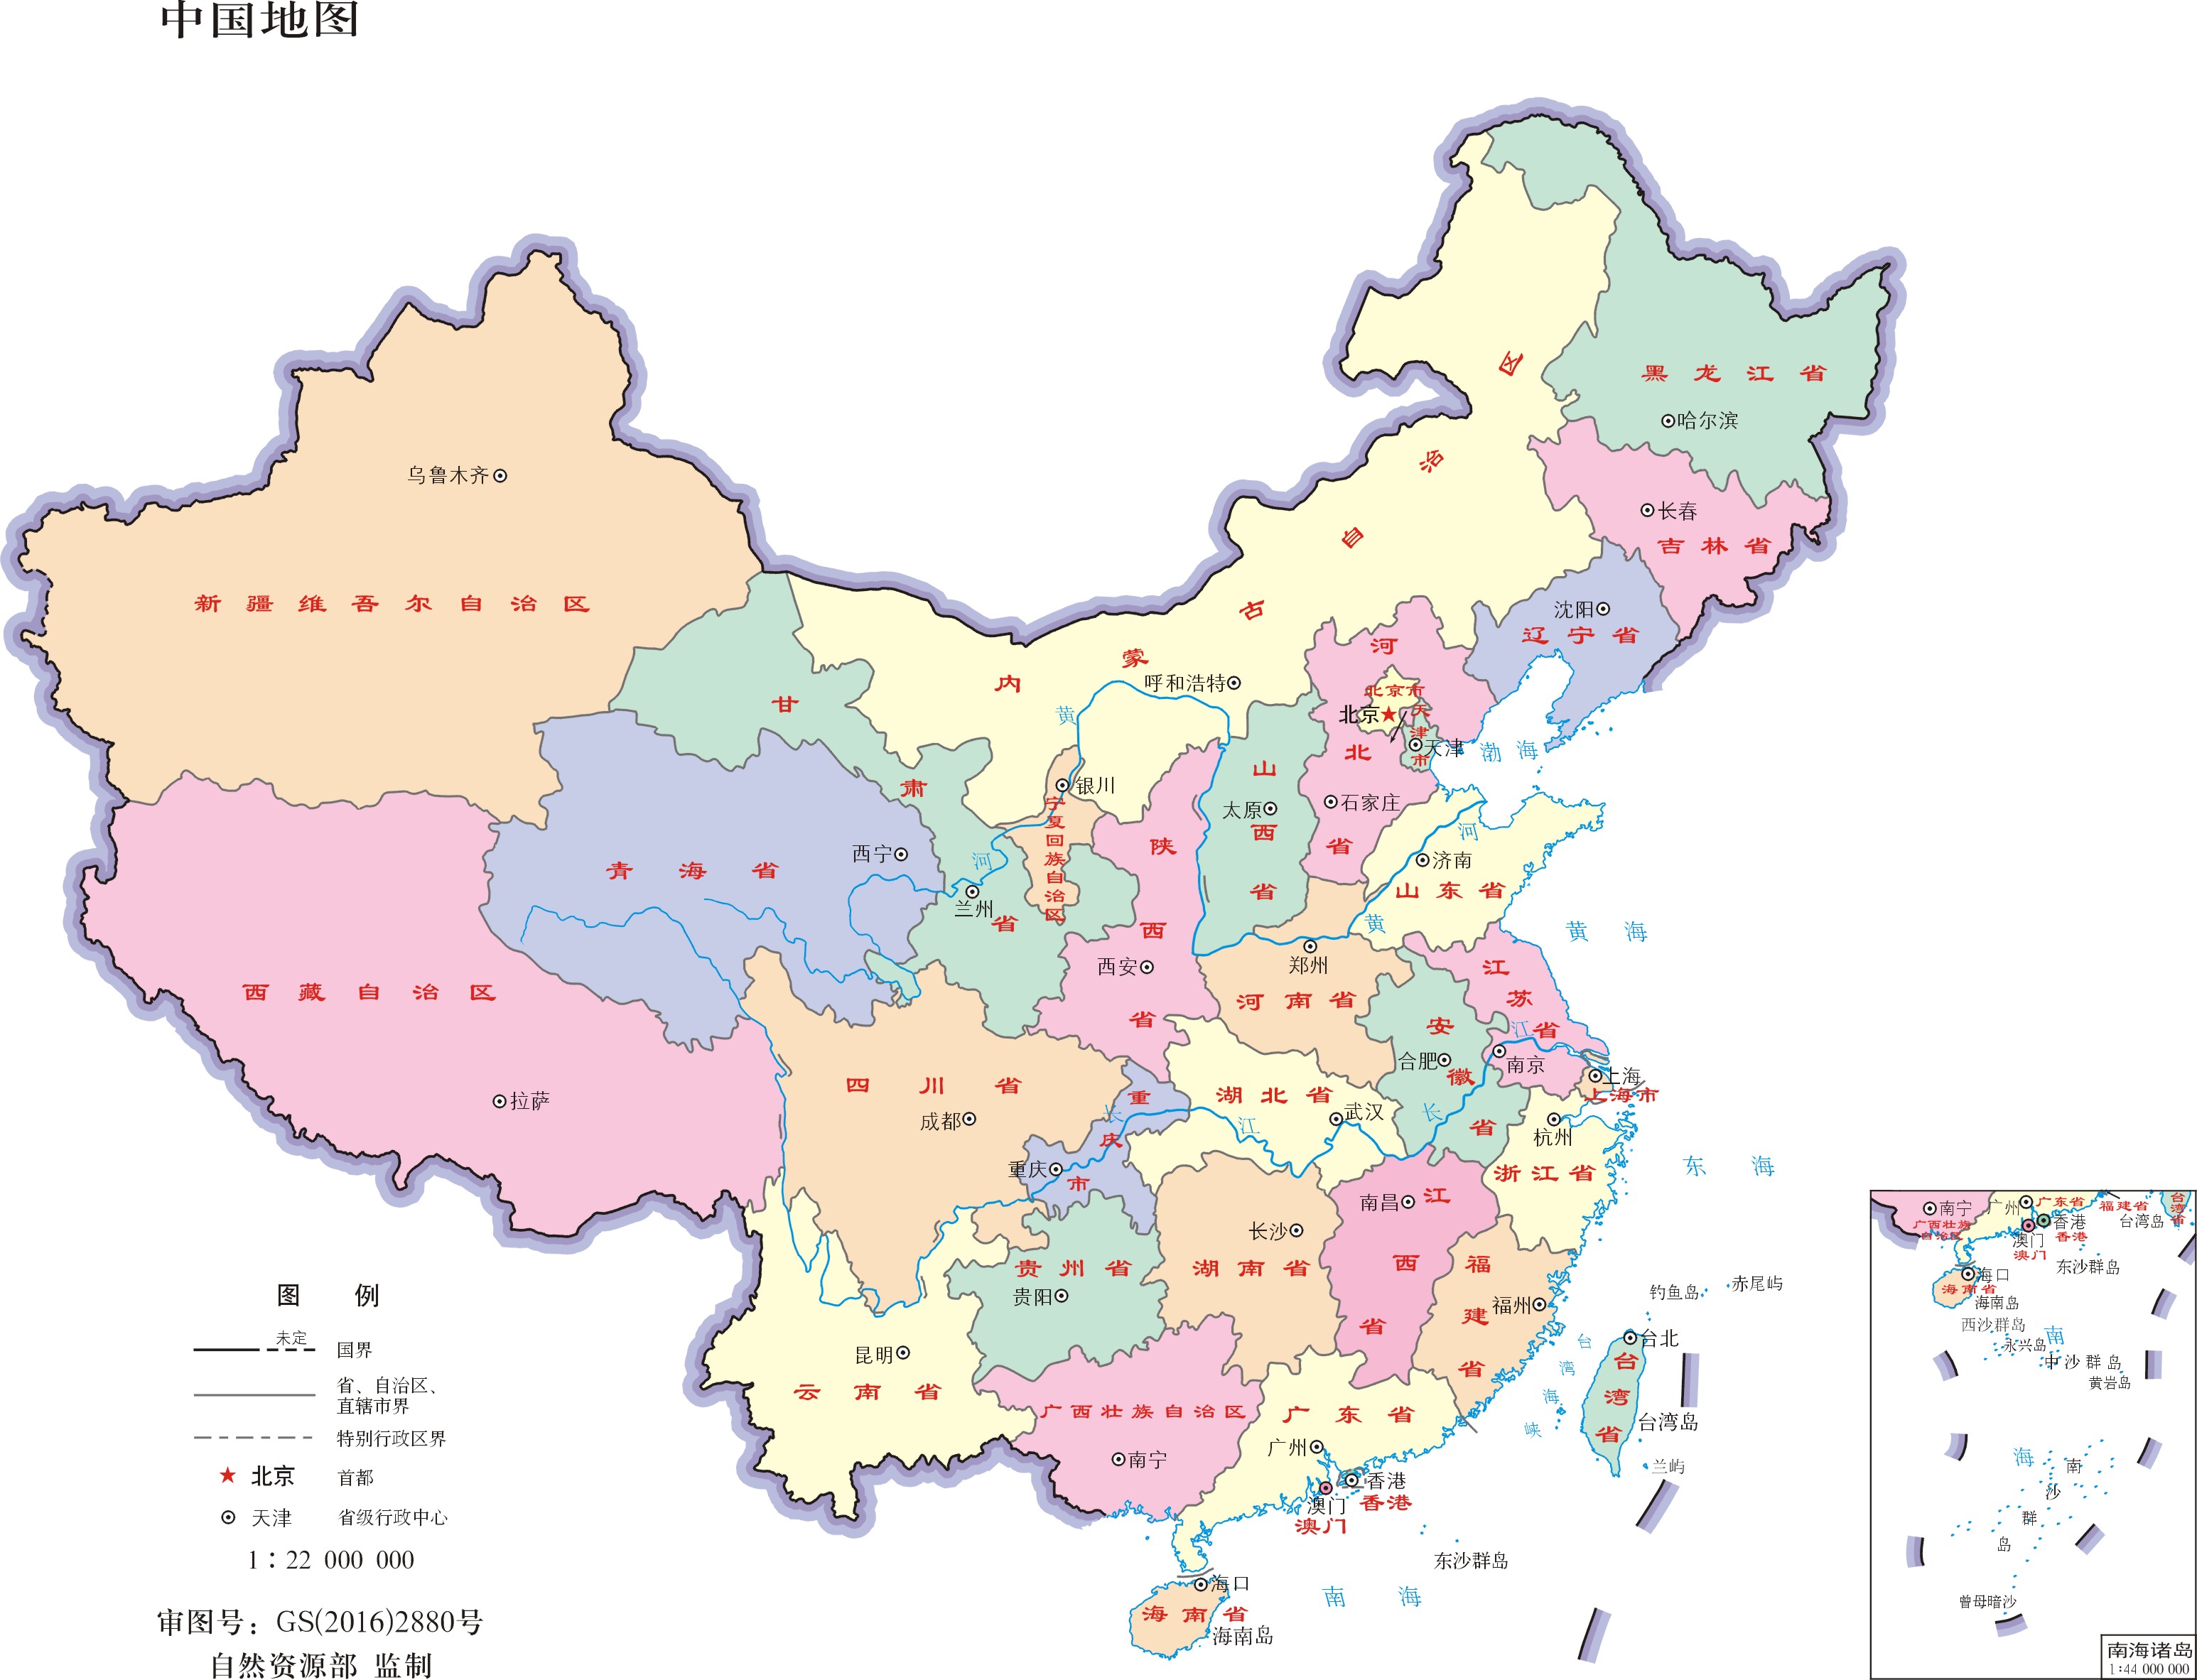 中国位于哪个半球？